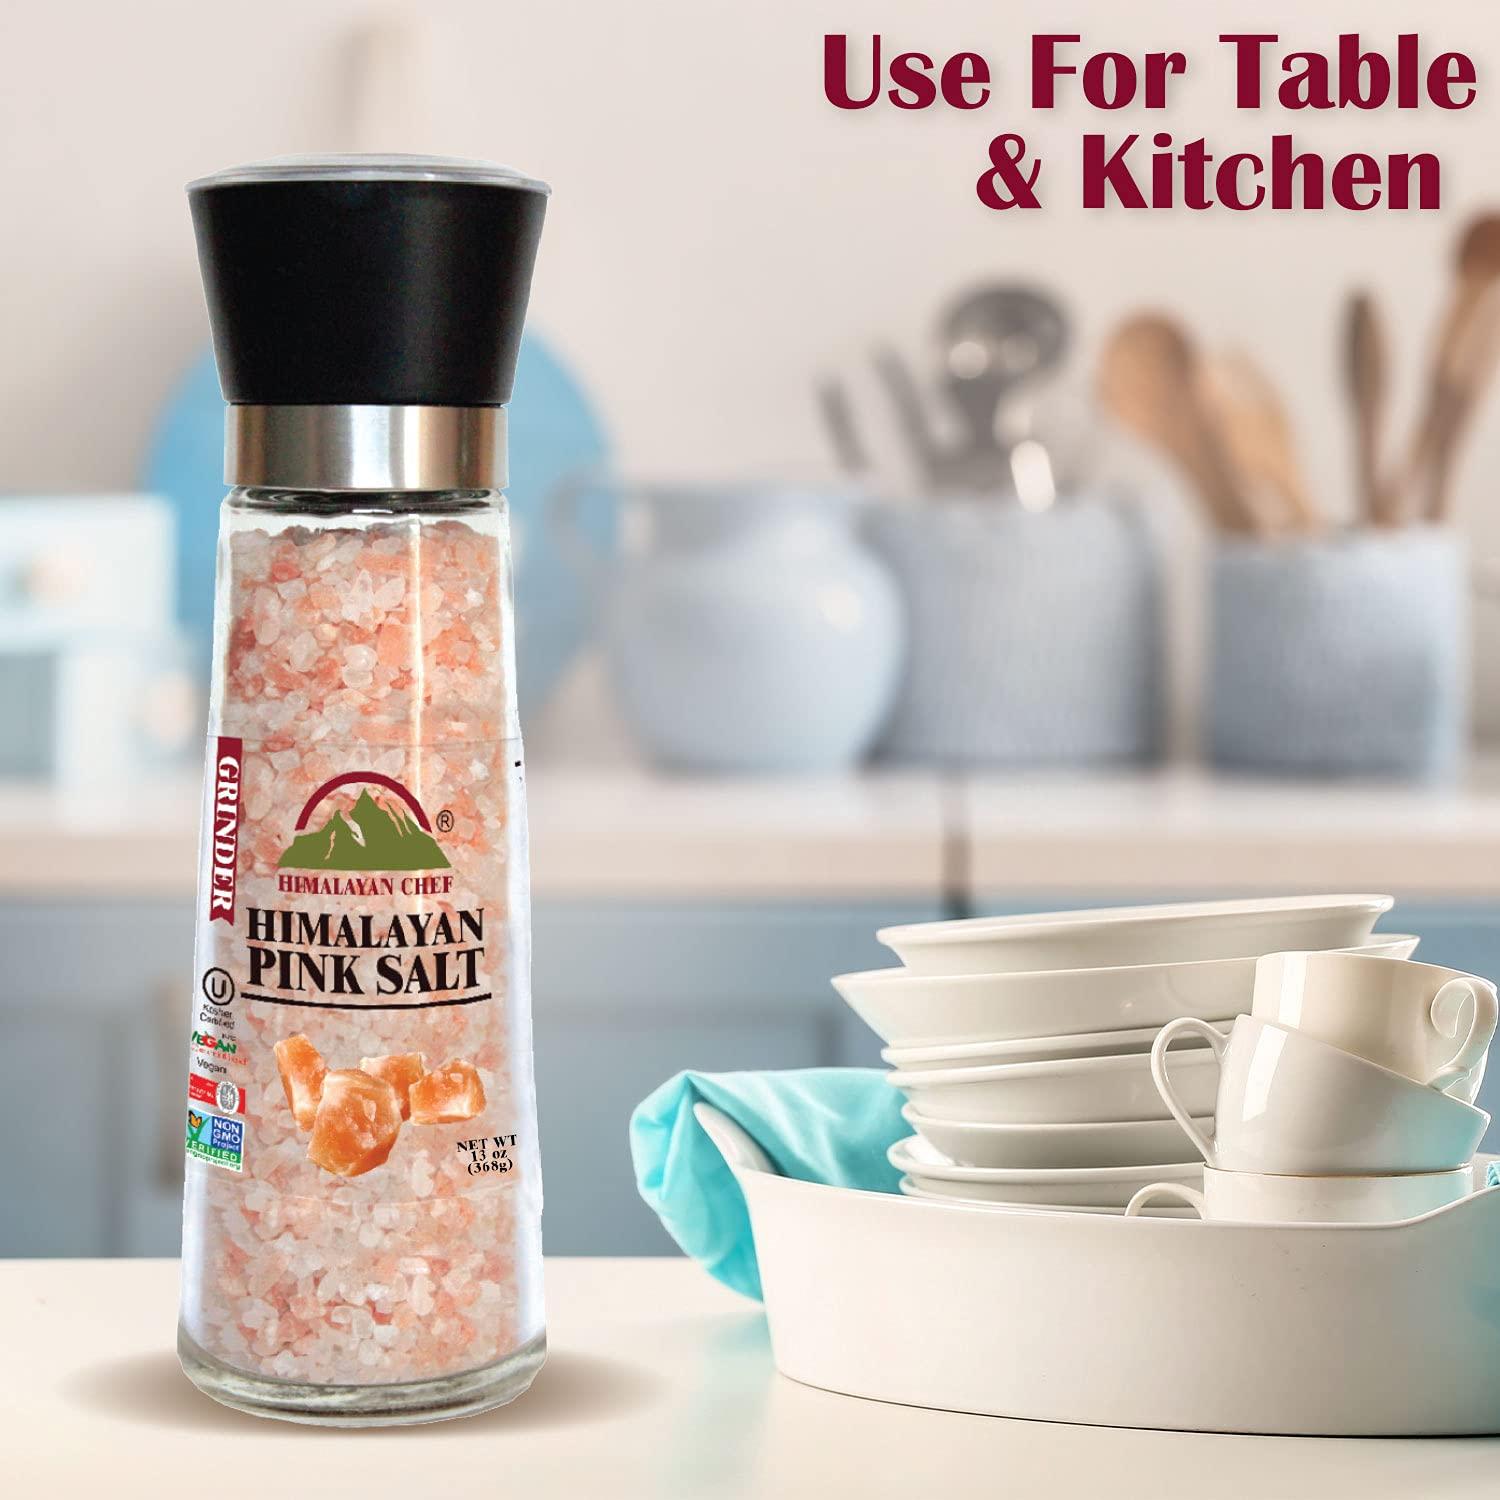 Organic Pink Himalayan Salt with Reusable Glass Grinder 7 Ounces